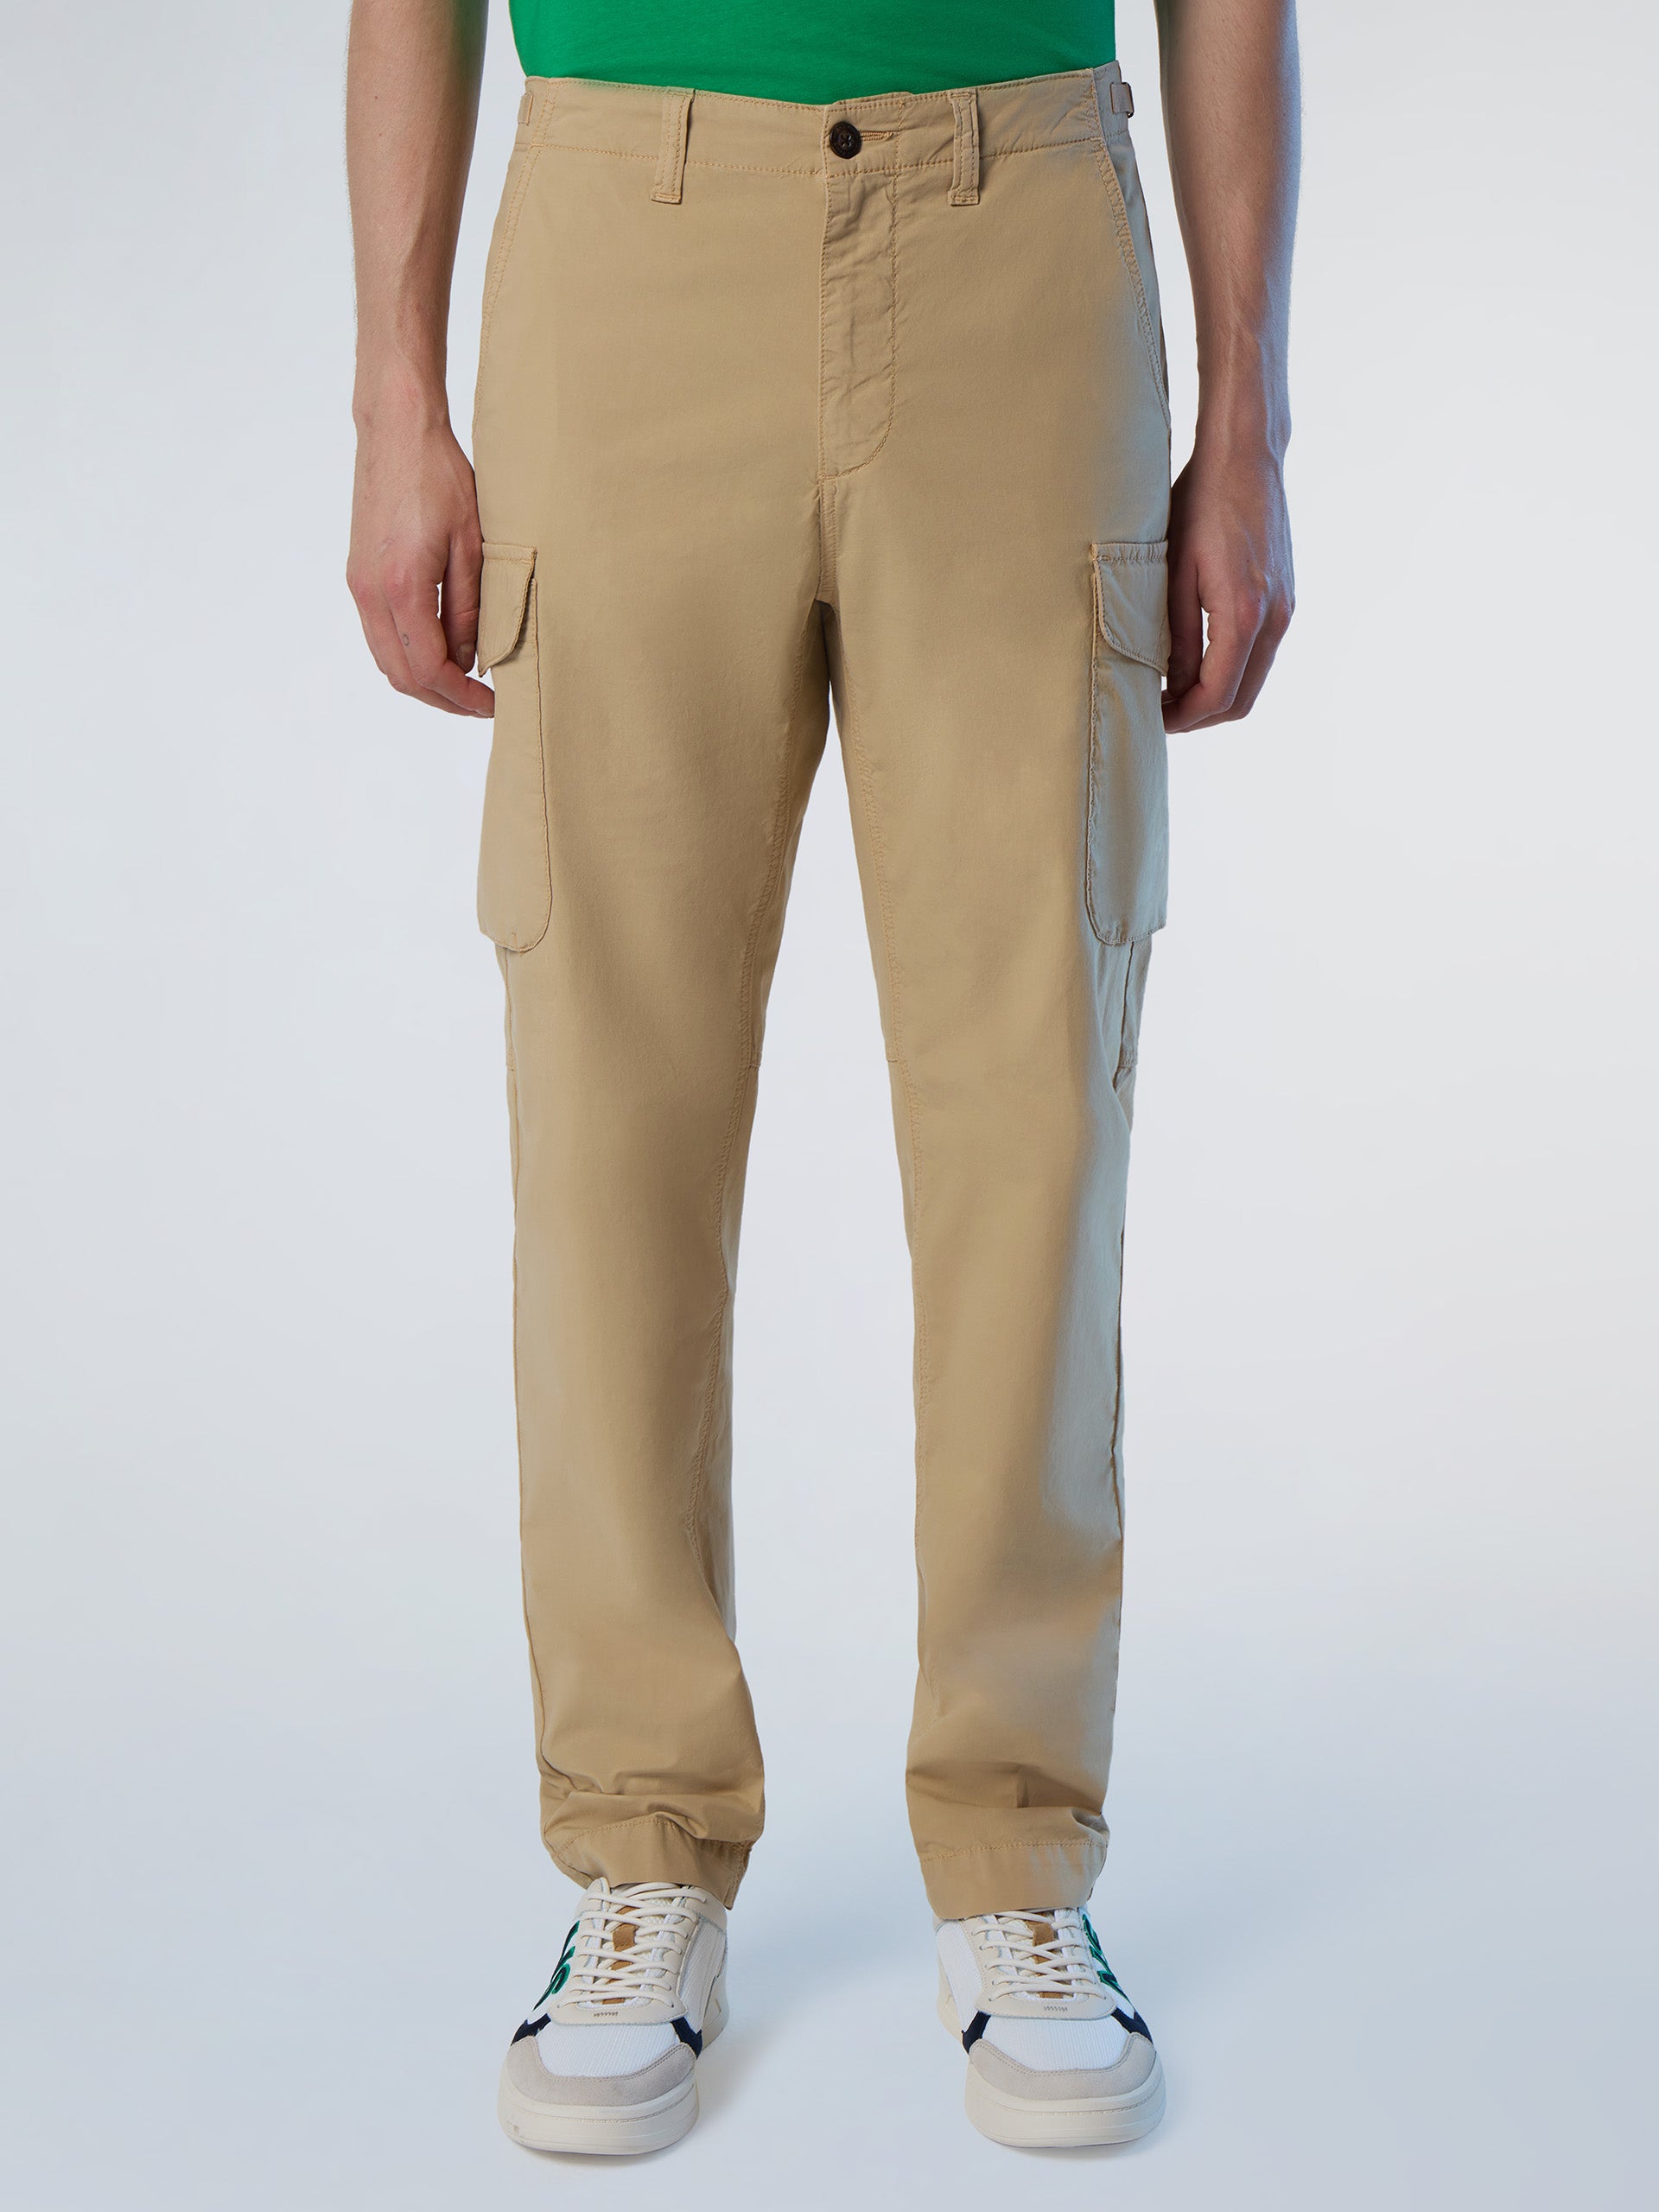 Buy Summer Trousers Online For Men in Pakistan | Hangree